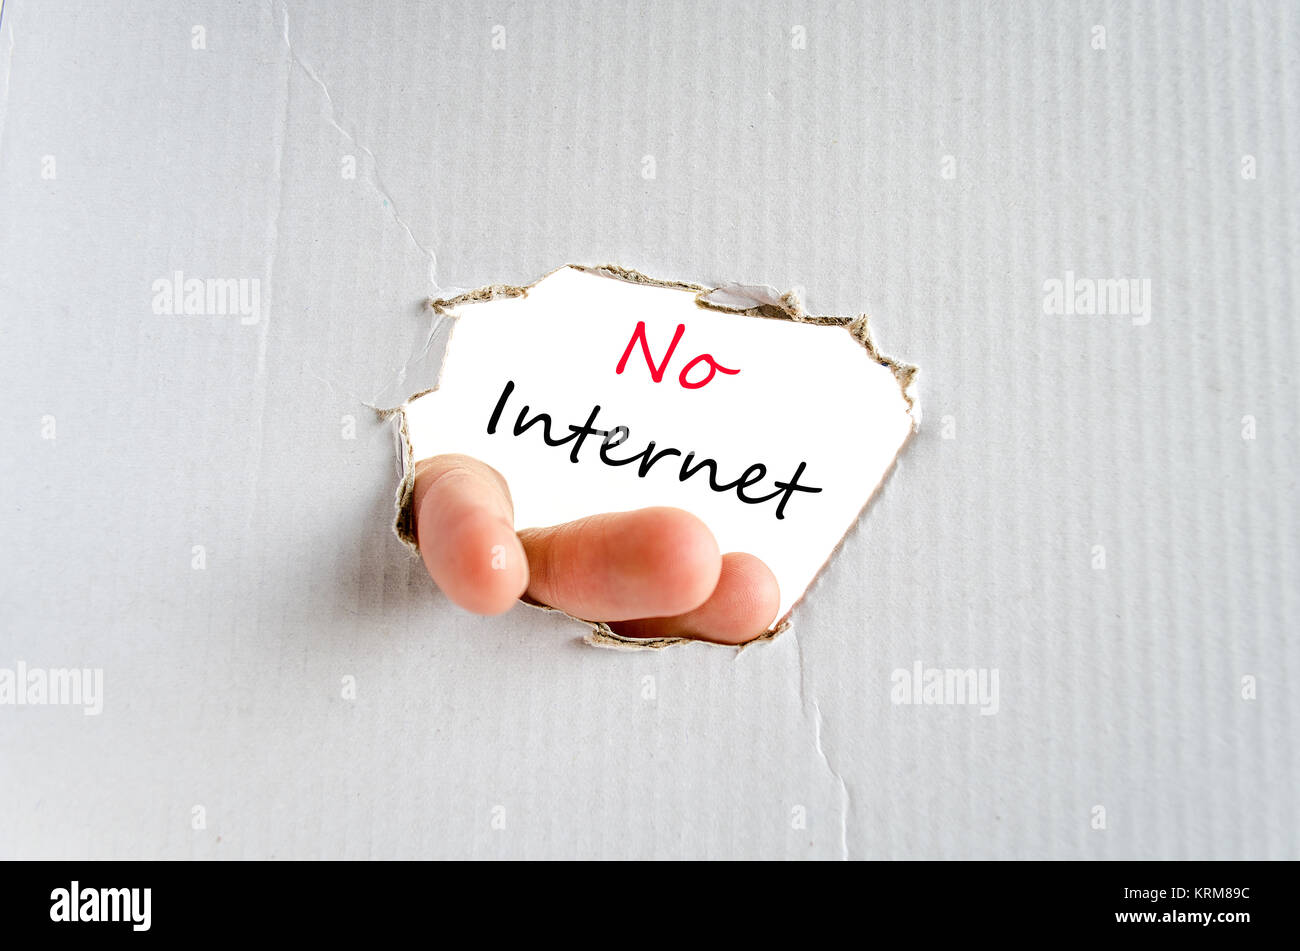 No internet text concept Stock Photo